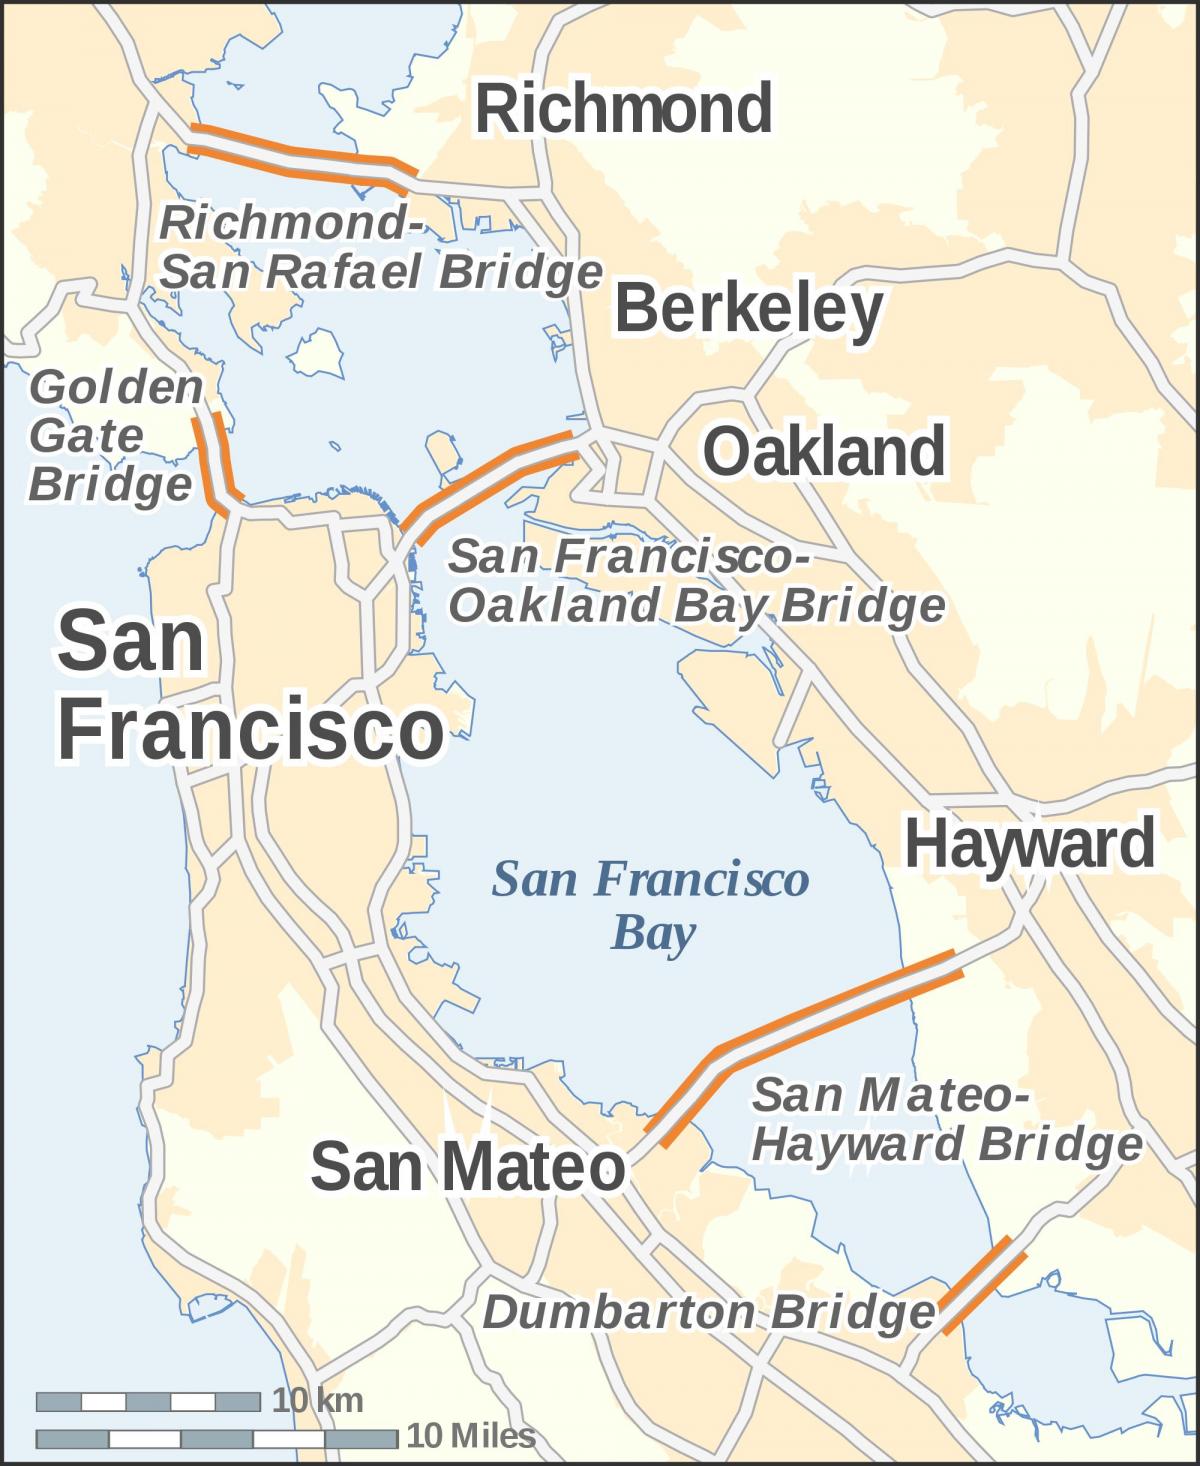 Mapa de San Francisco ponts